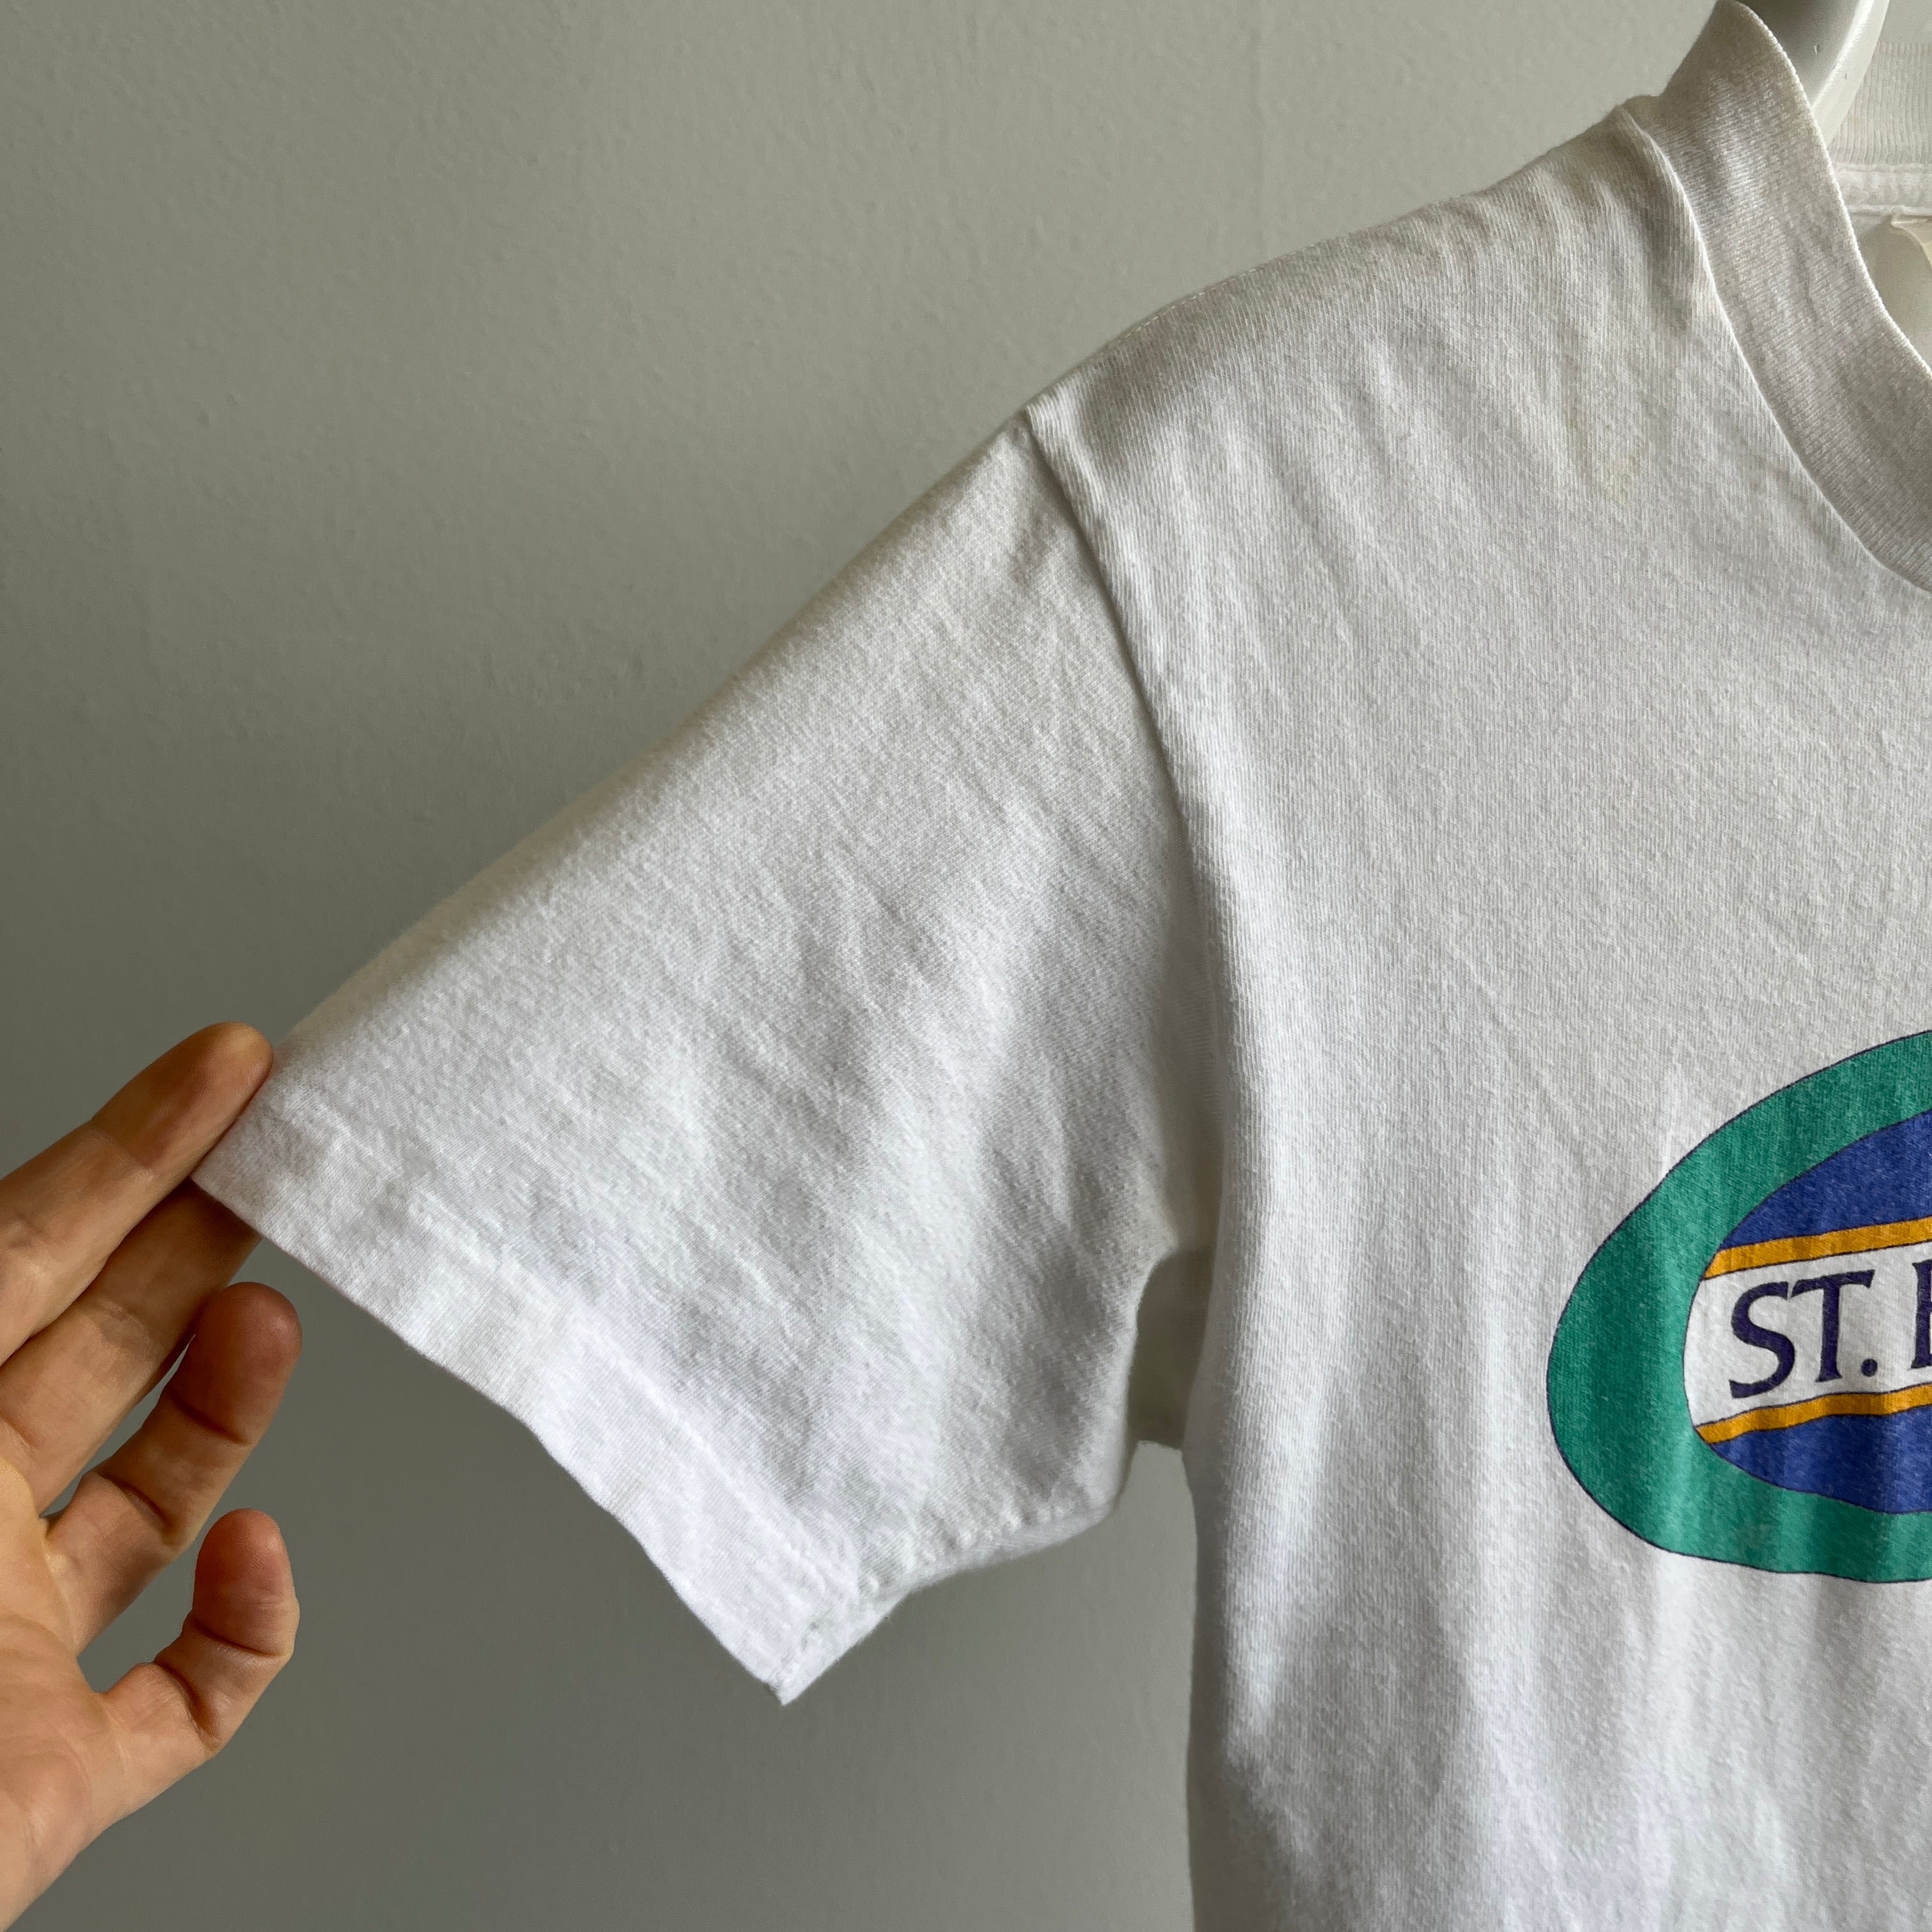 1980s St. Barths Tourist T-Shirt